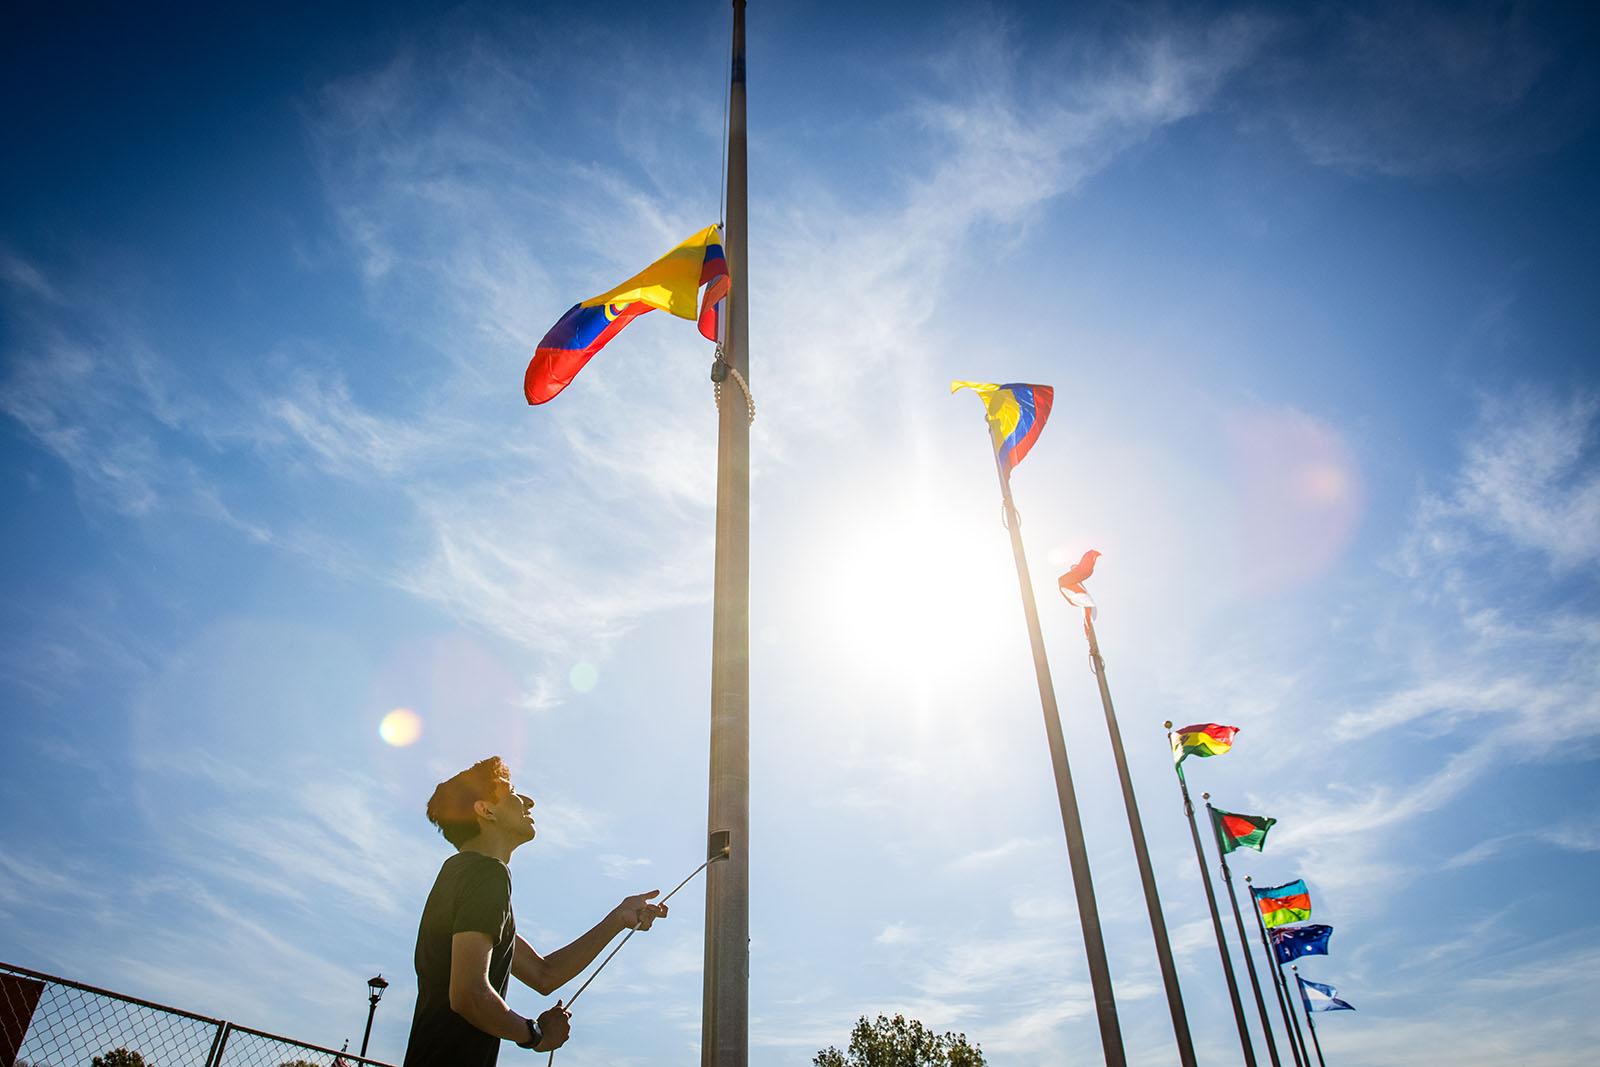 十博体育版的国际学生在每年秋天的返校节活动中都会参加升旗仪式，以庆祝他们的家乡和文化以及大学的多样性. 